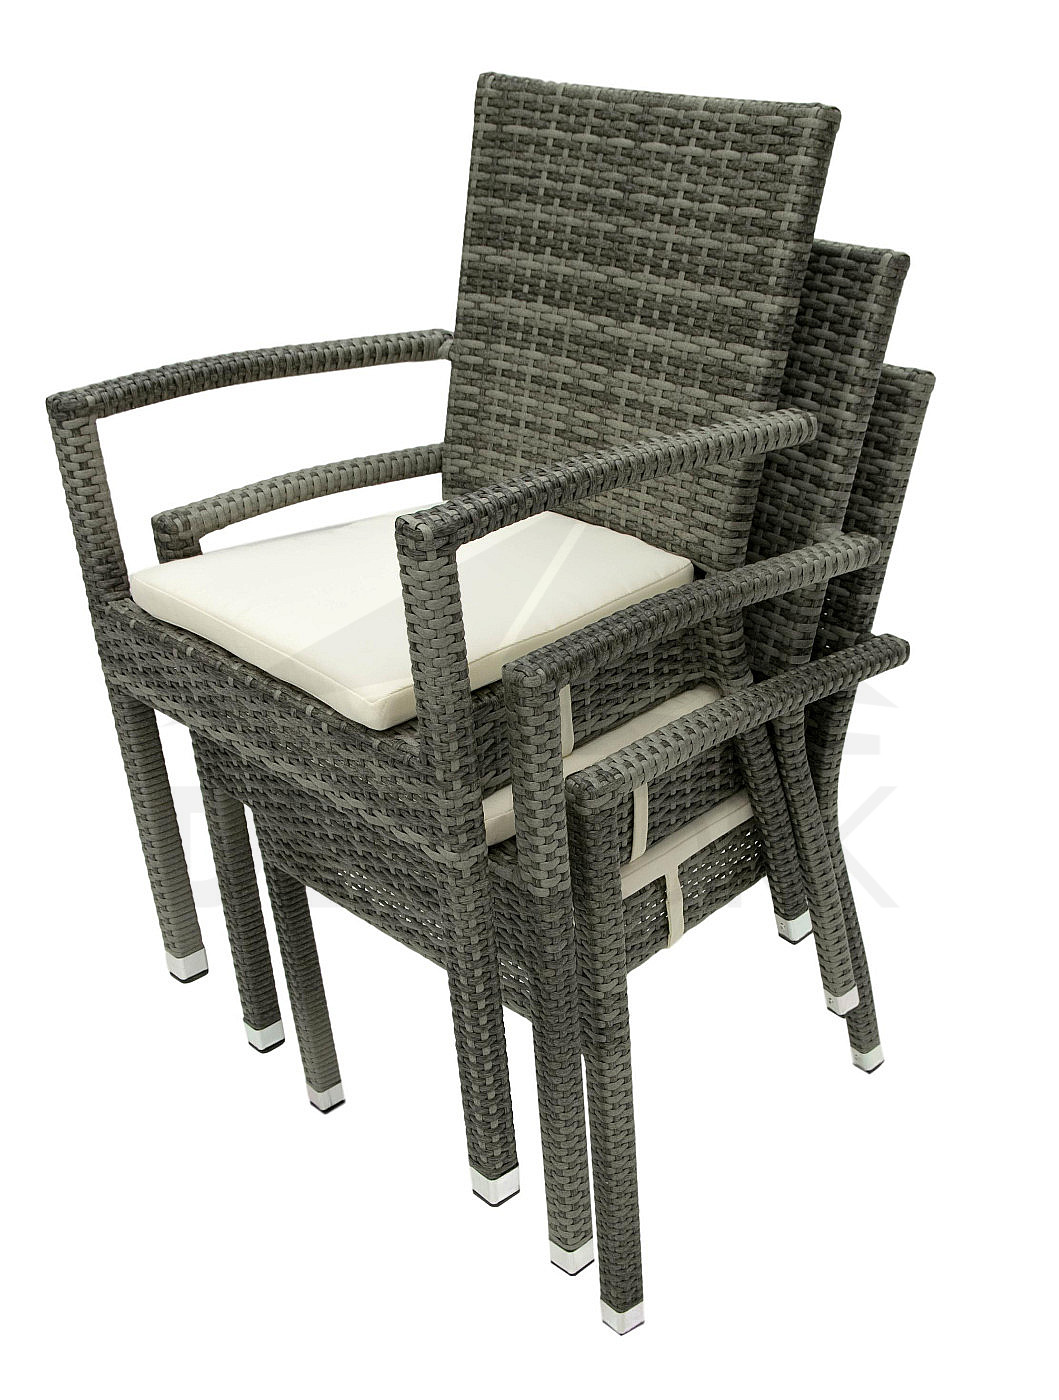 NAPOLI Polyrattan Sitzauflage Gartenstuhl mit aus grau